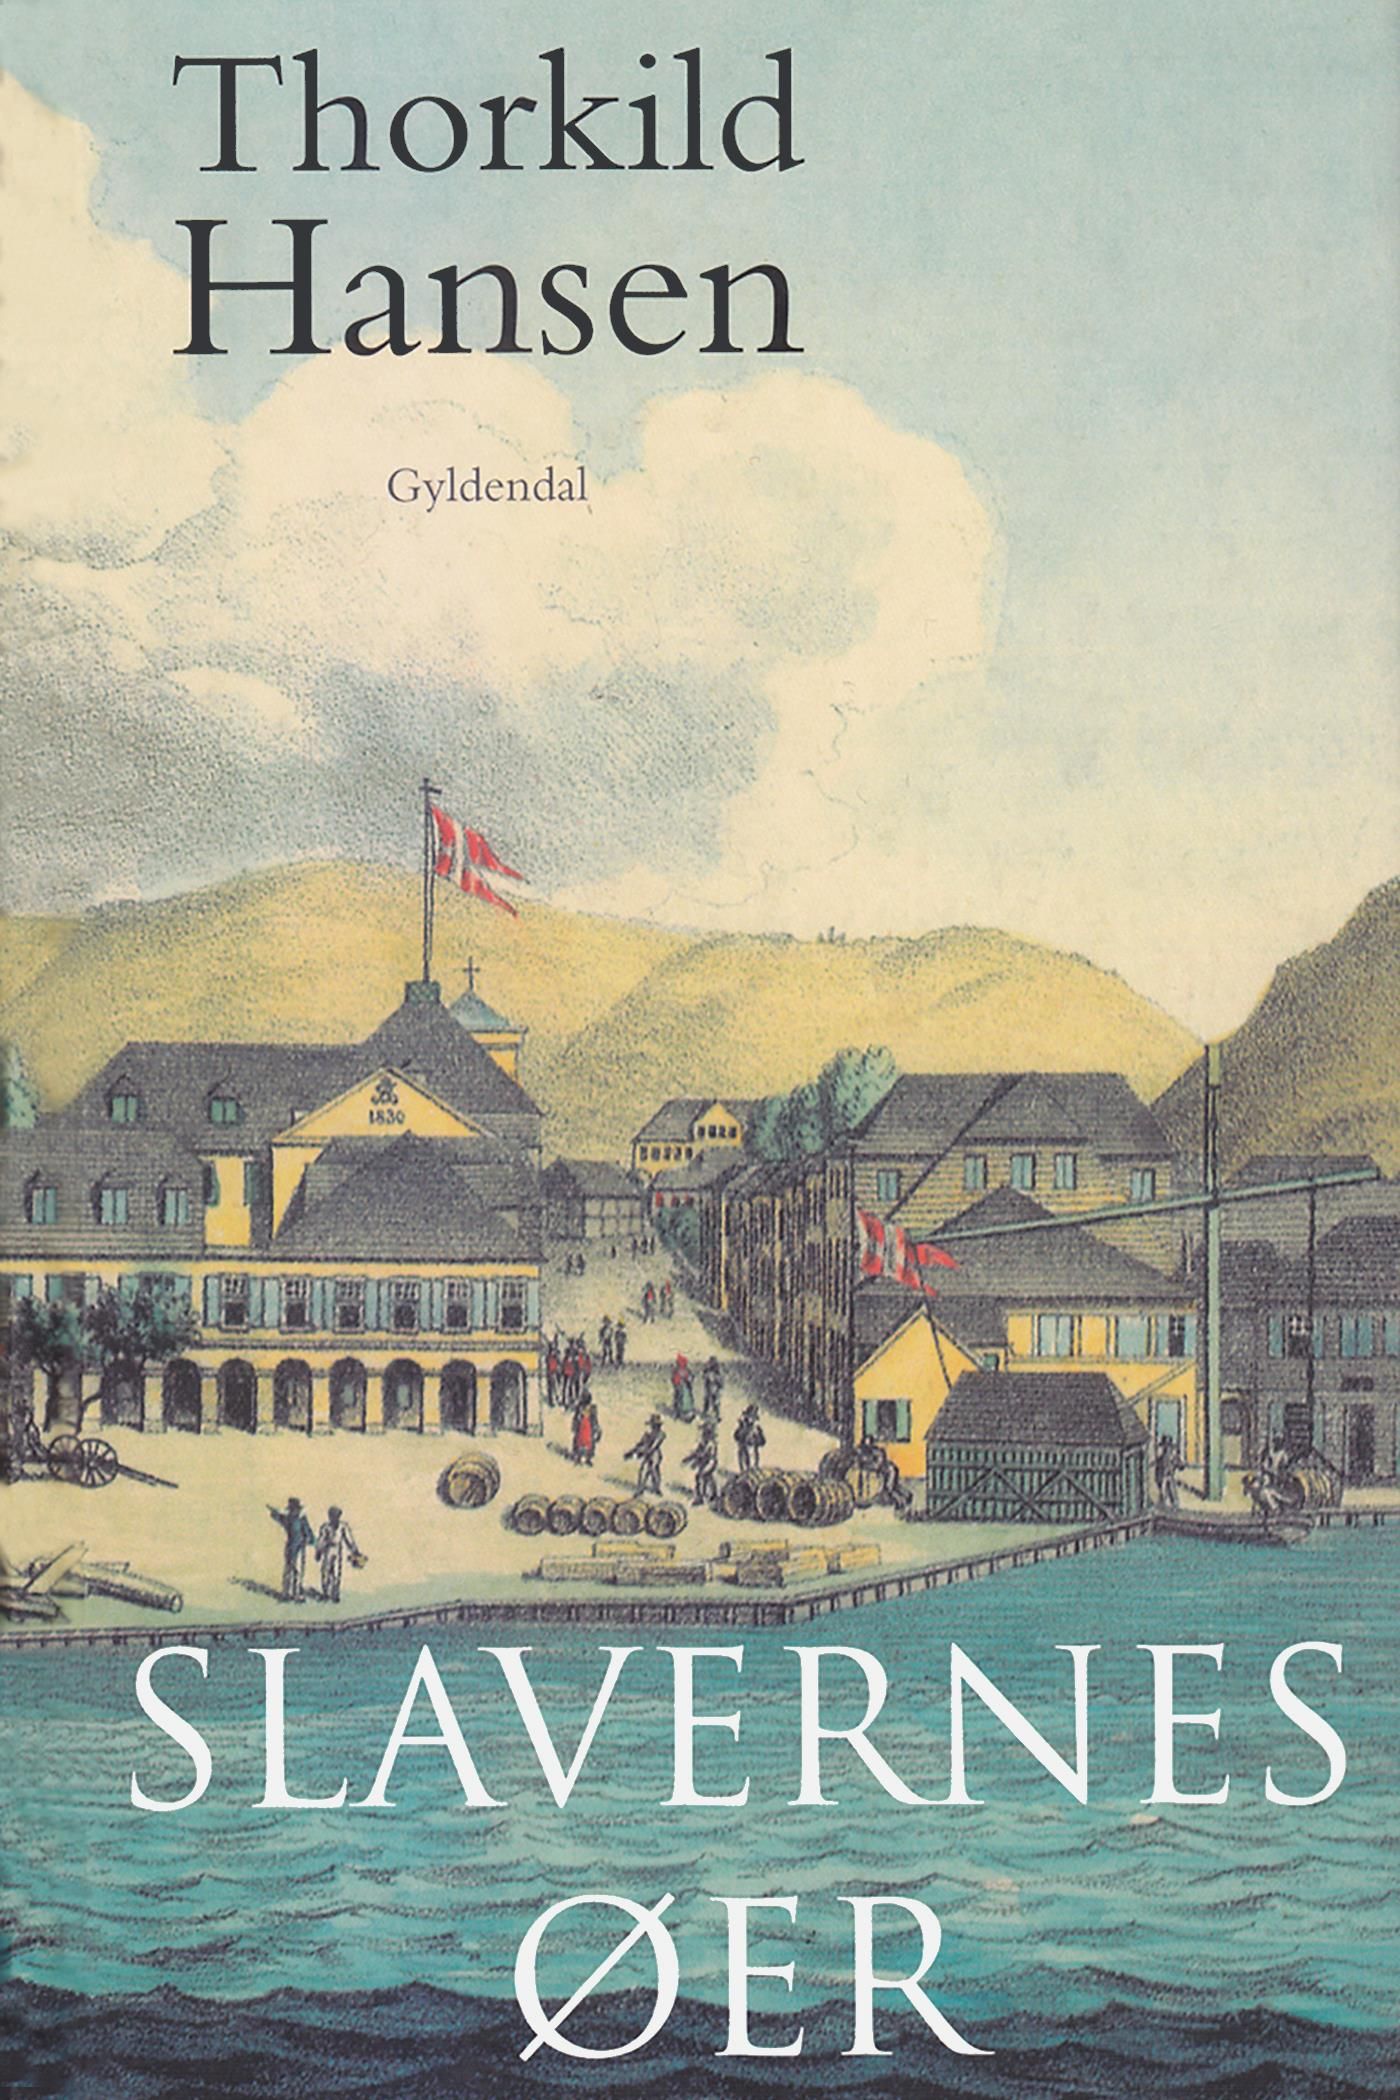 Slavernes øer, e-bok av Thorkild Hansen